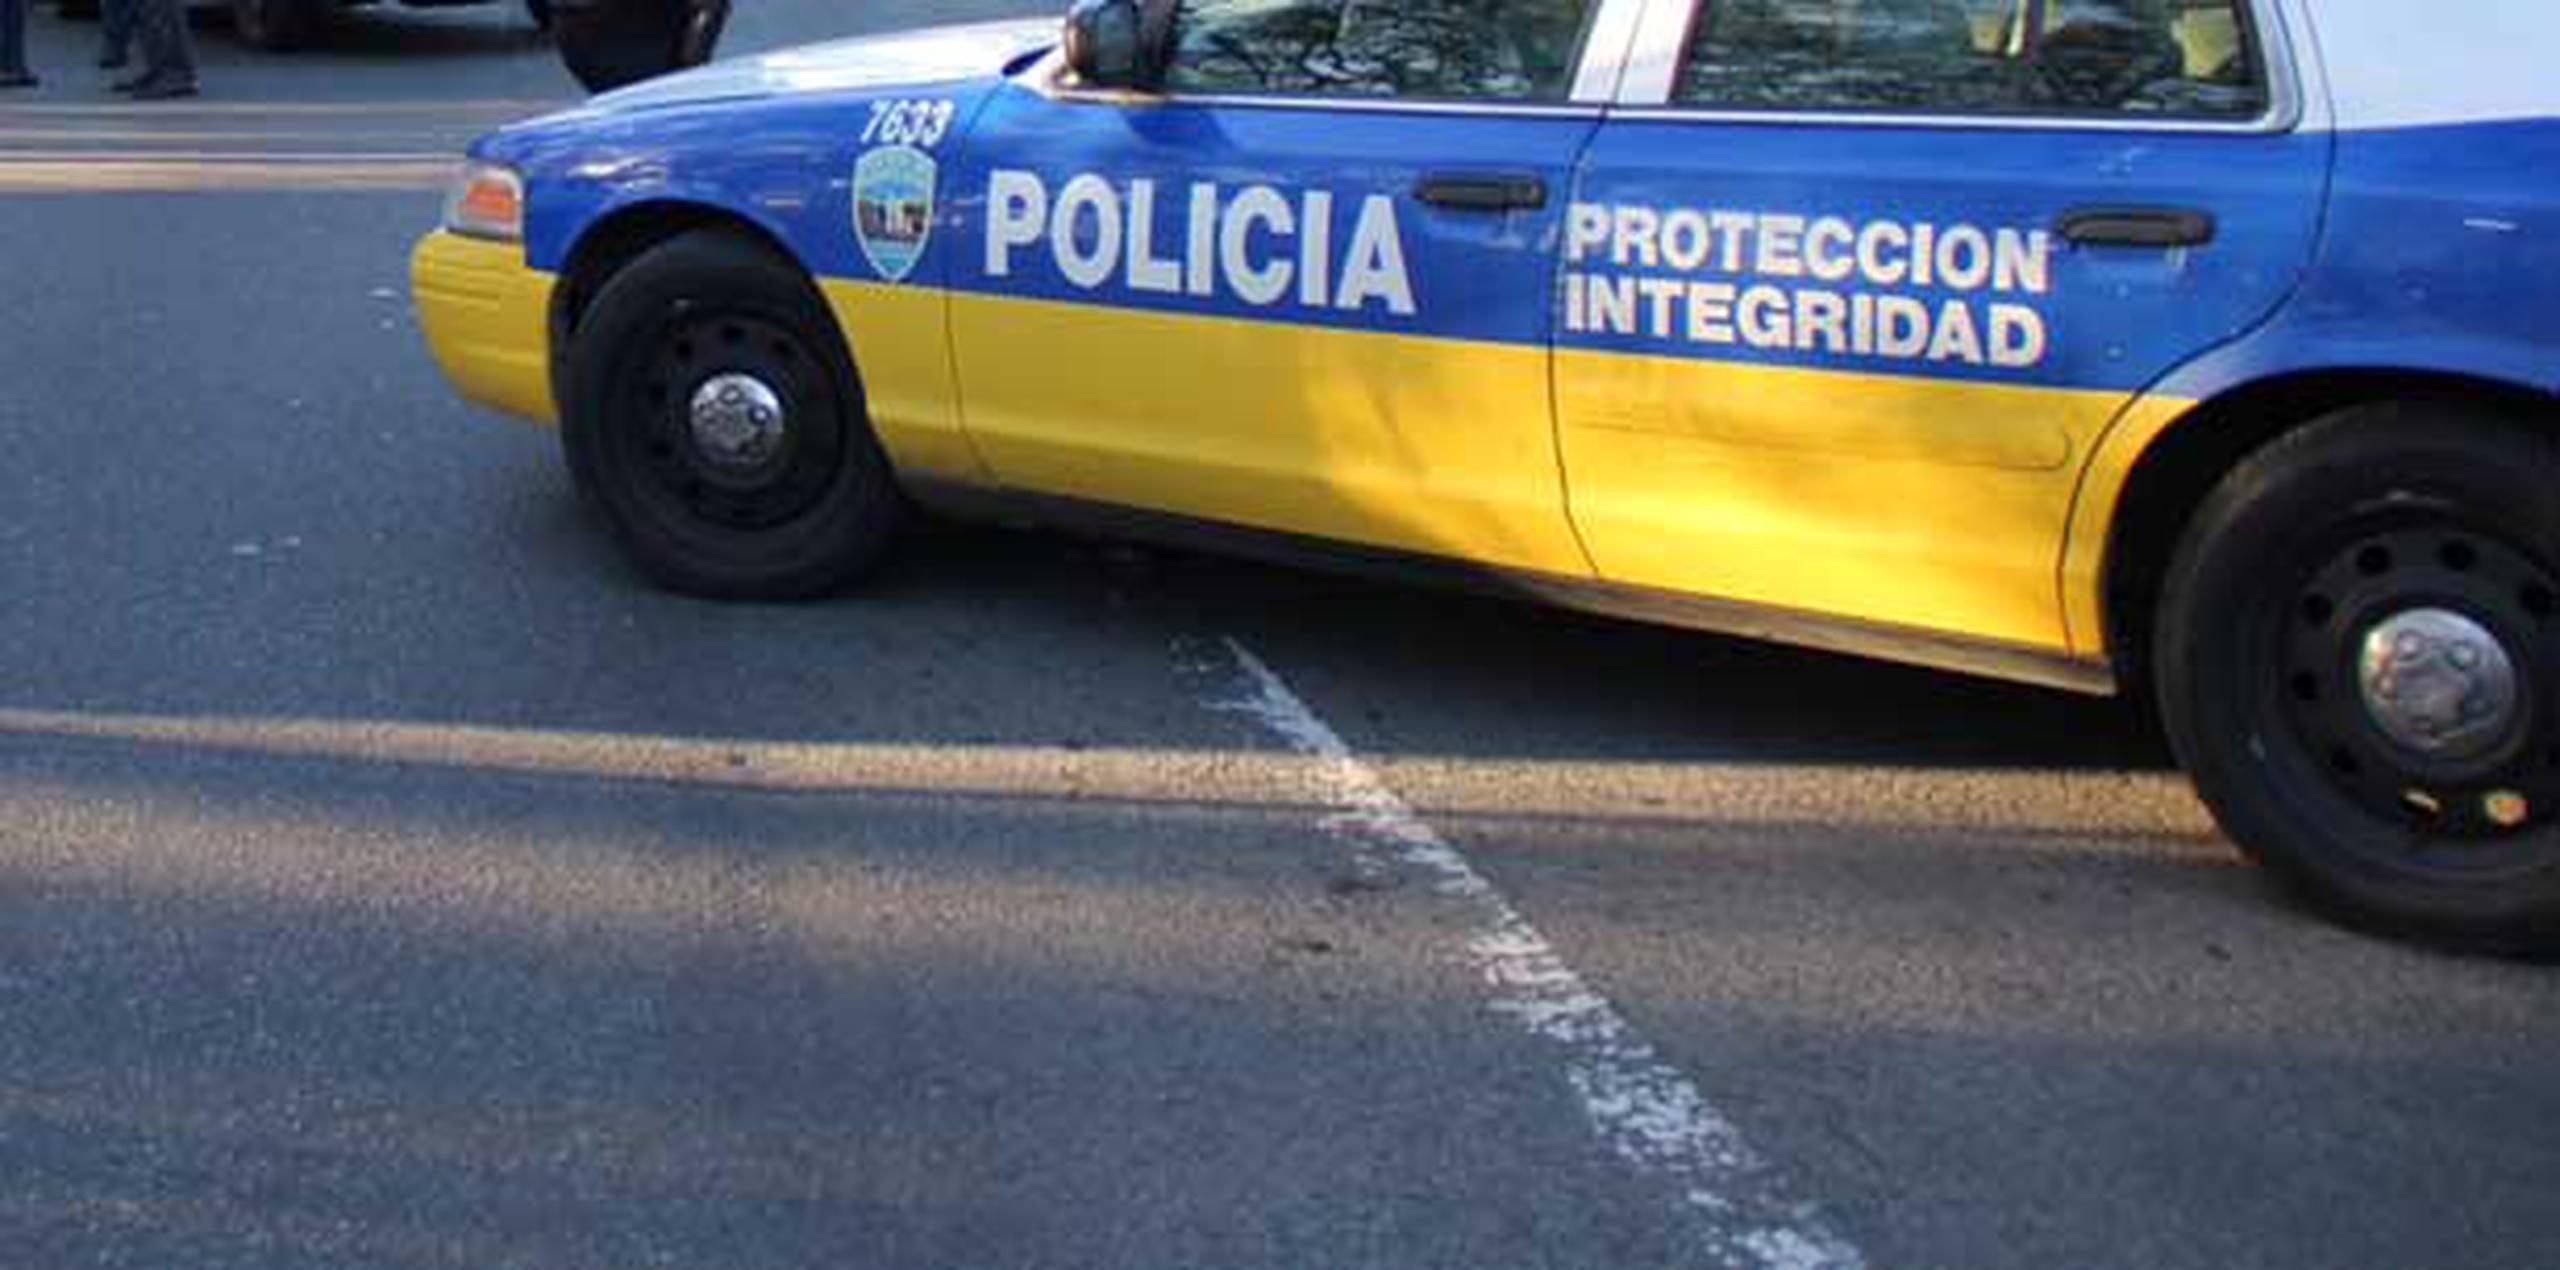 El incidente es investigado por personal de la División de Patrulla de Carreteras de Aguadilla. Torres Jiménez arrojó negativo en la prueba de alcohol. (Archivo)